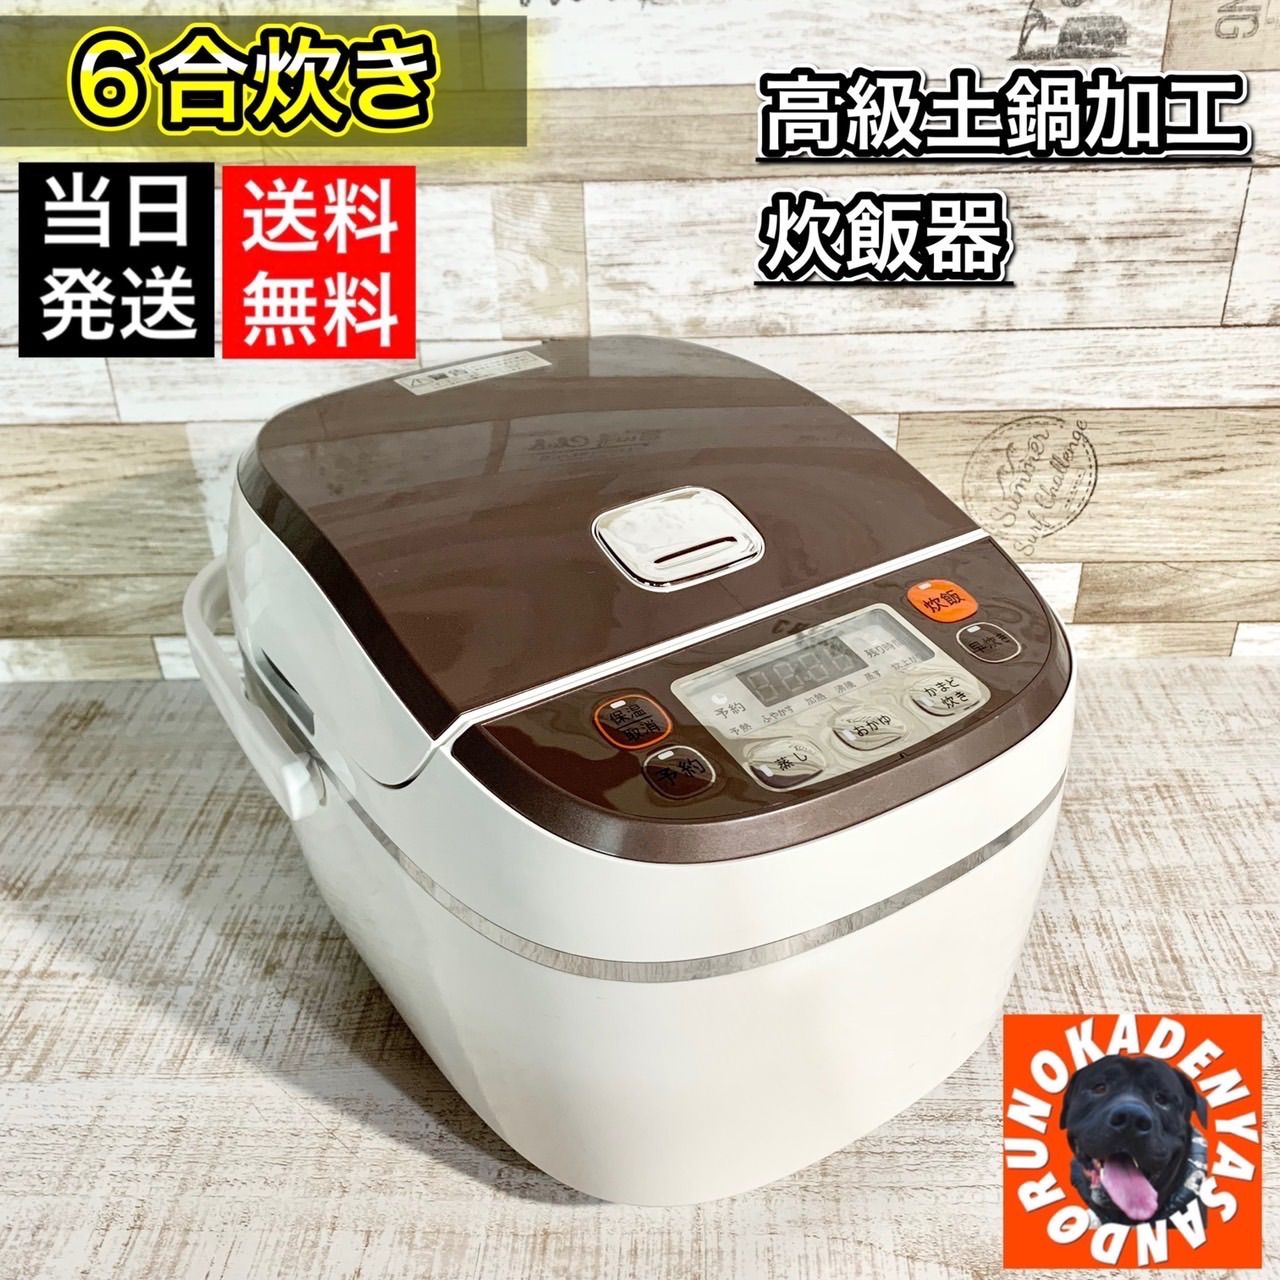 大栄トレーディング(株) 高級土鍋加工炊飯器 - 岡山県の家具